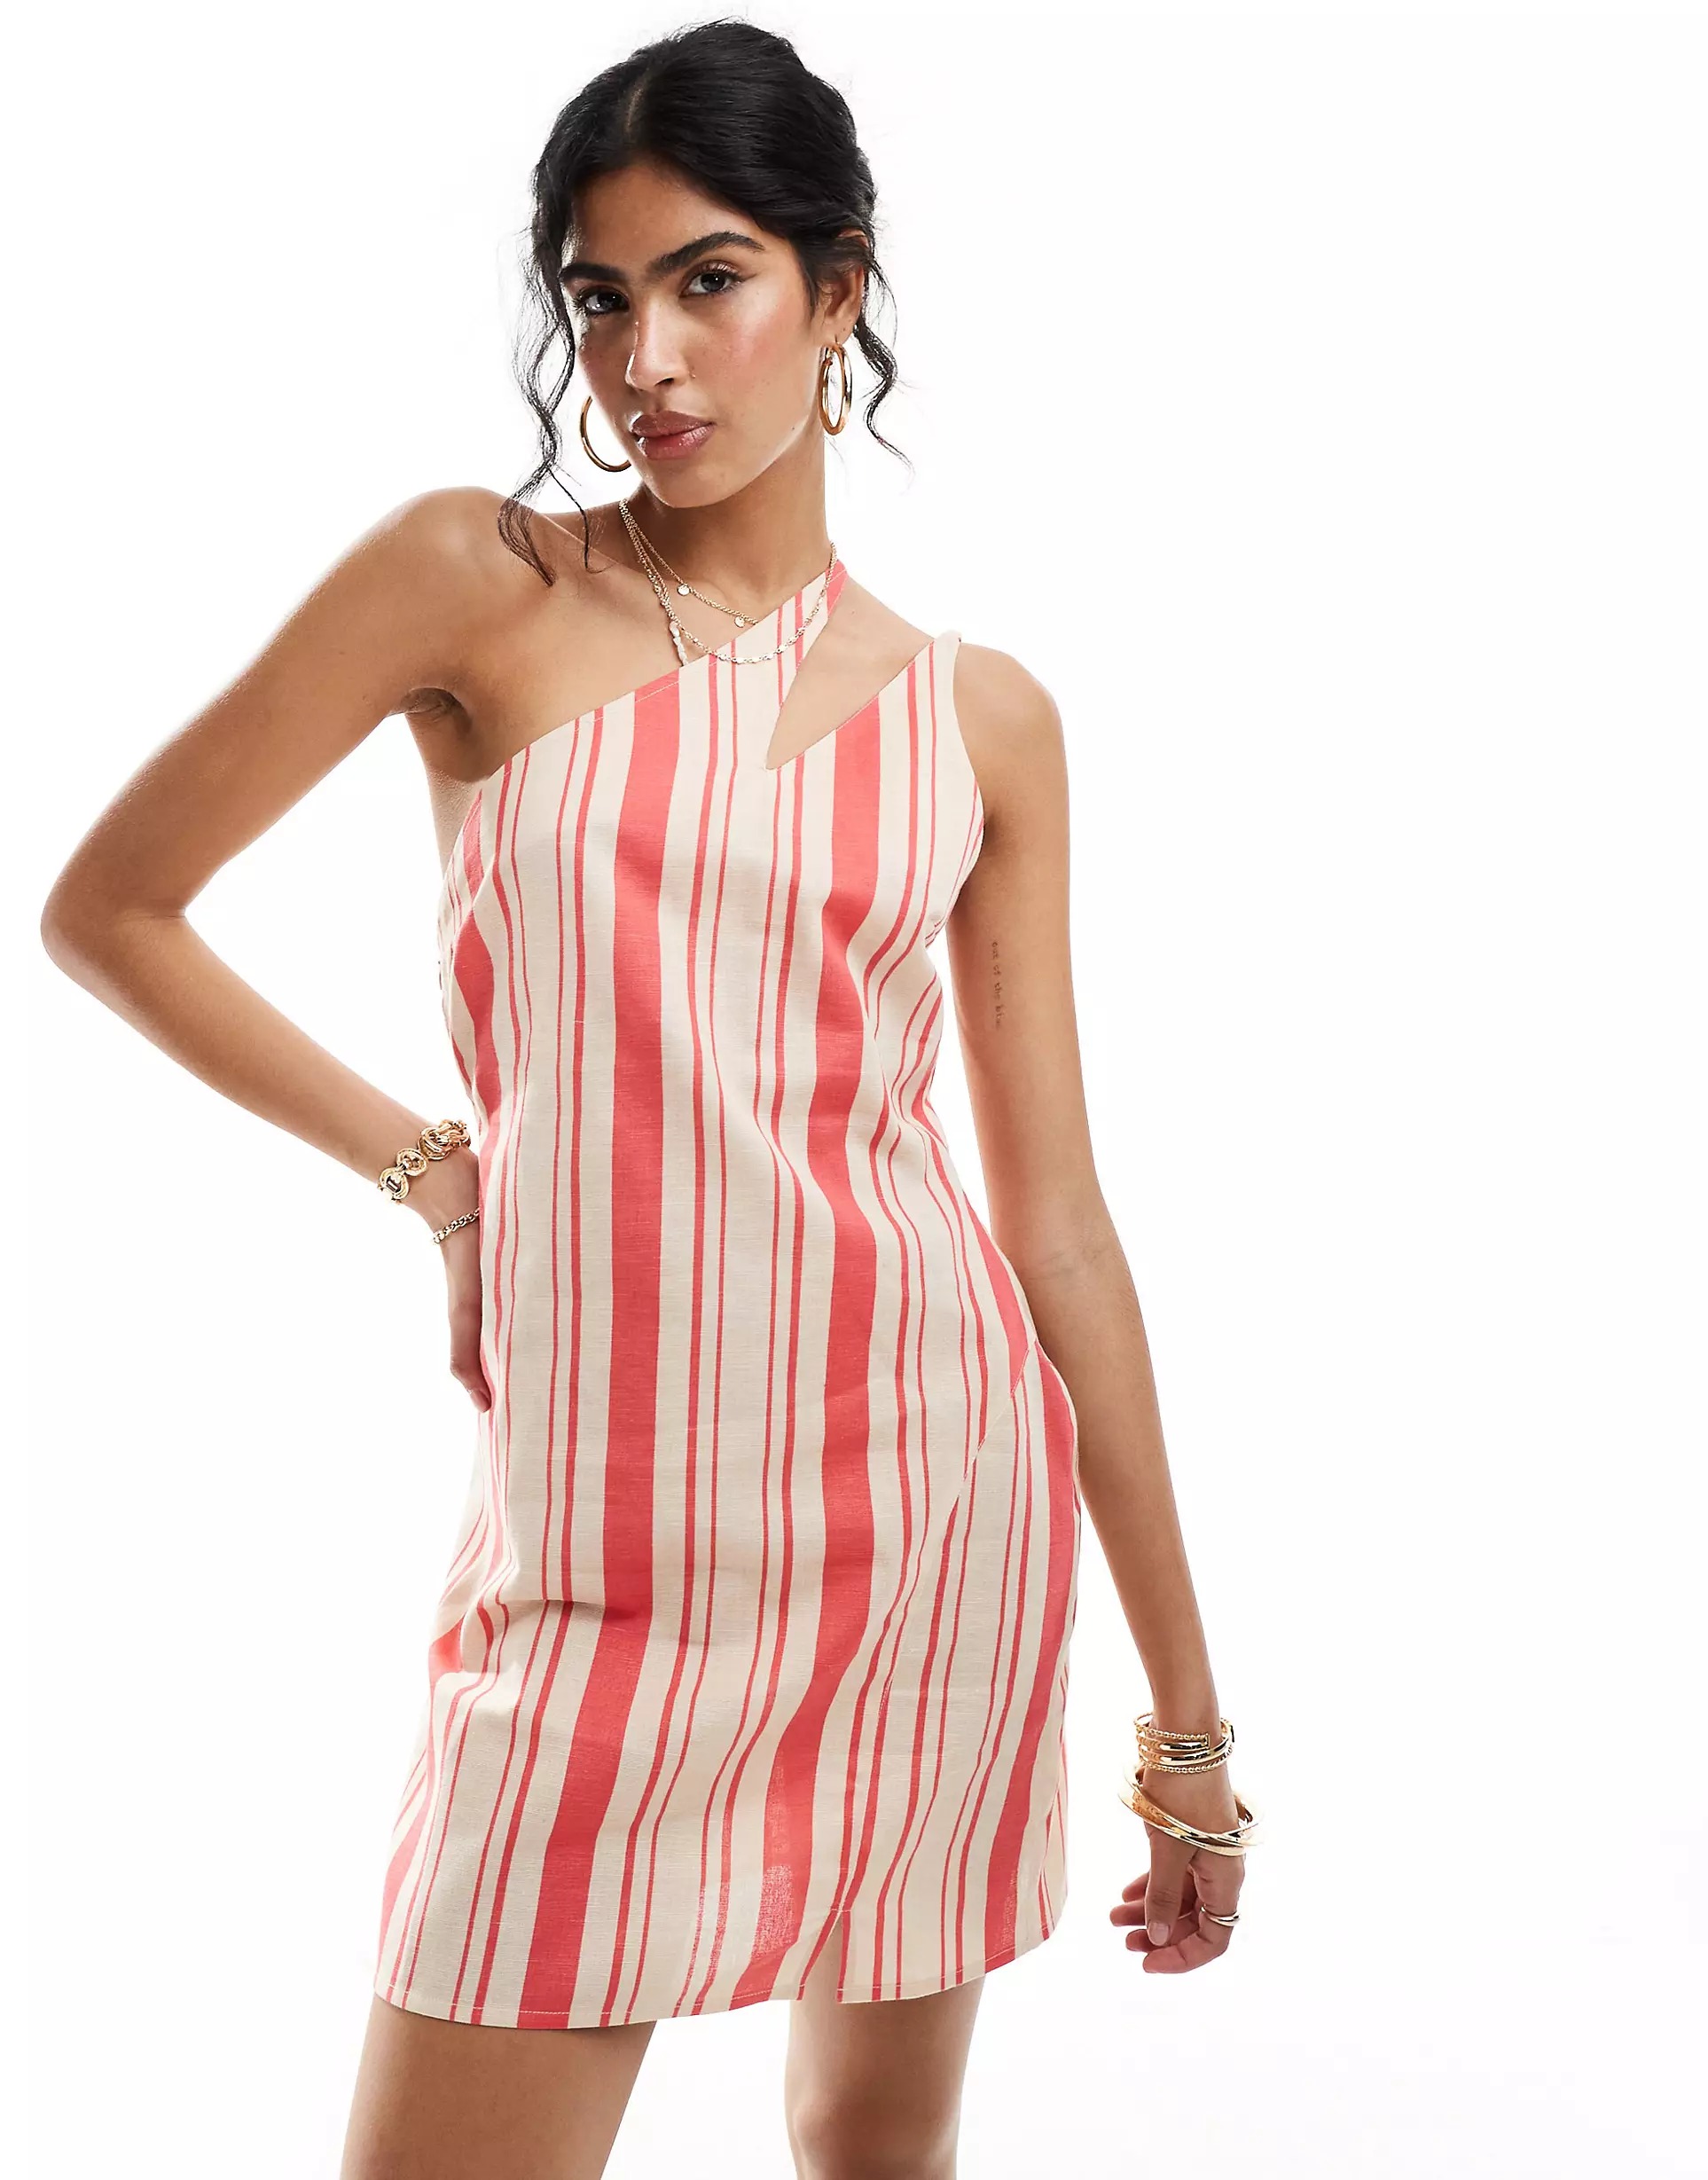 Платье мини Asos Design One-shoulder, Striped Linen With Slit Straps, розовый, красный женское повседневное платье в полоску с разрезом на пуговицах